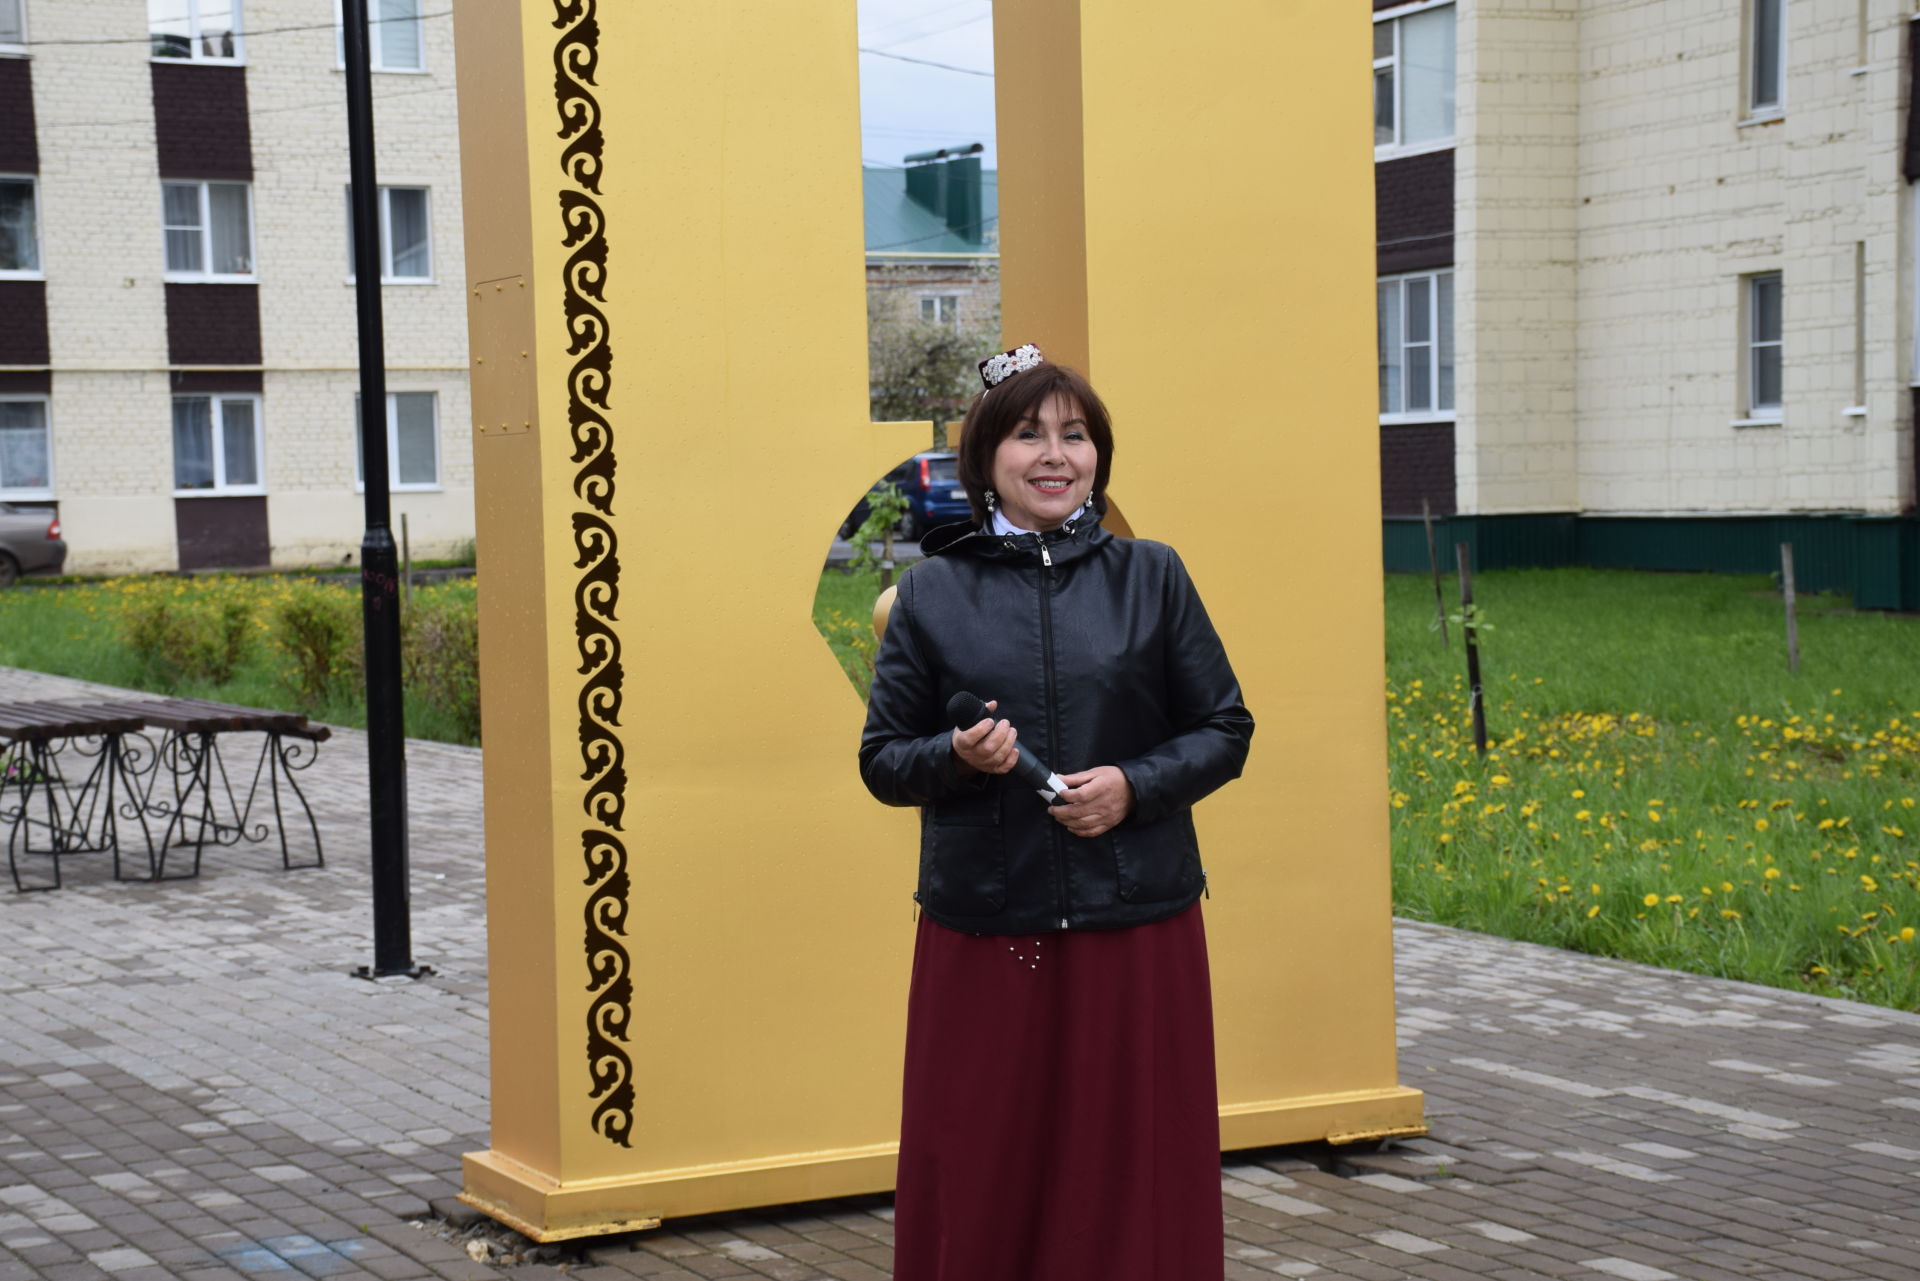 Нурлатские газетчики День печати Татарстана отметили вместе с подписчиками у памятника-стелы журналистам